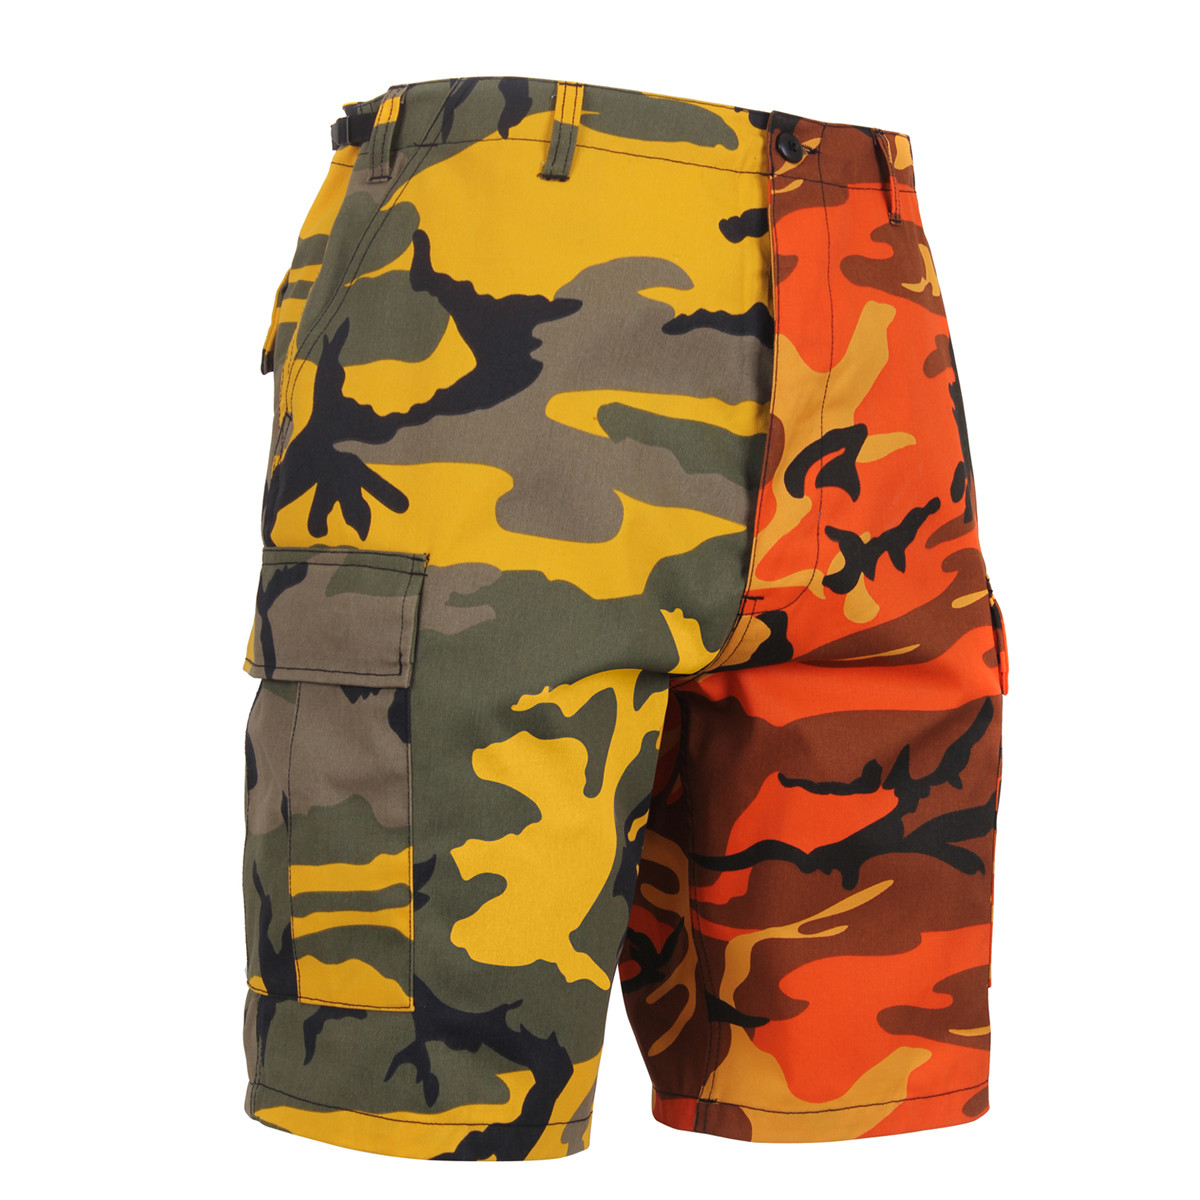 Shop Two/Tone Camo Cargo Shorts - Fatigues Army Navy